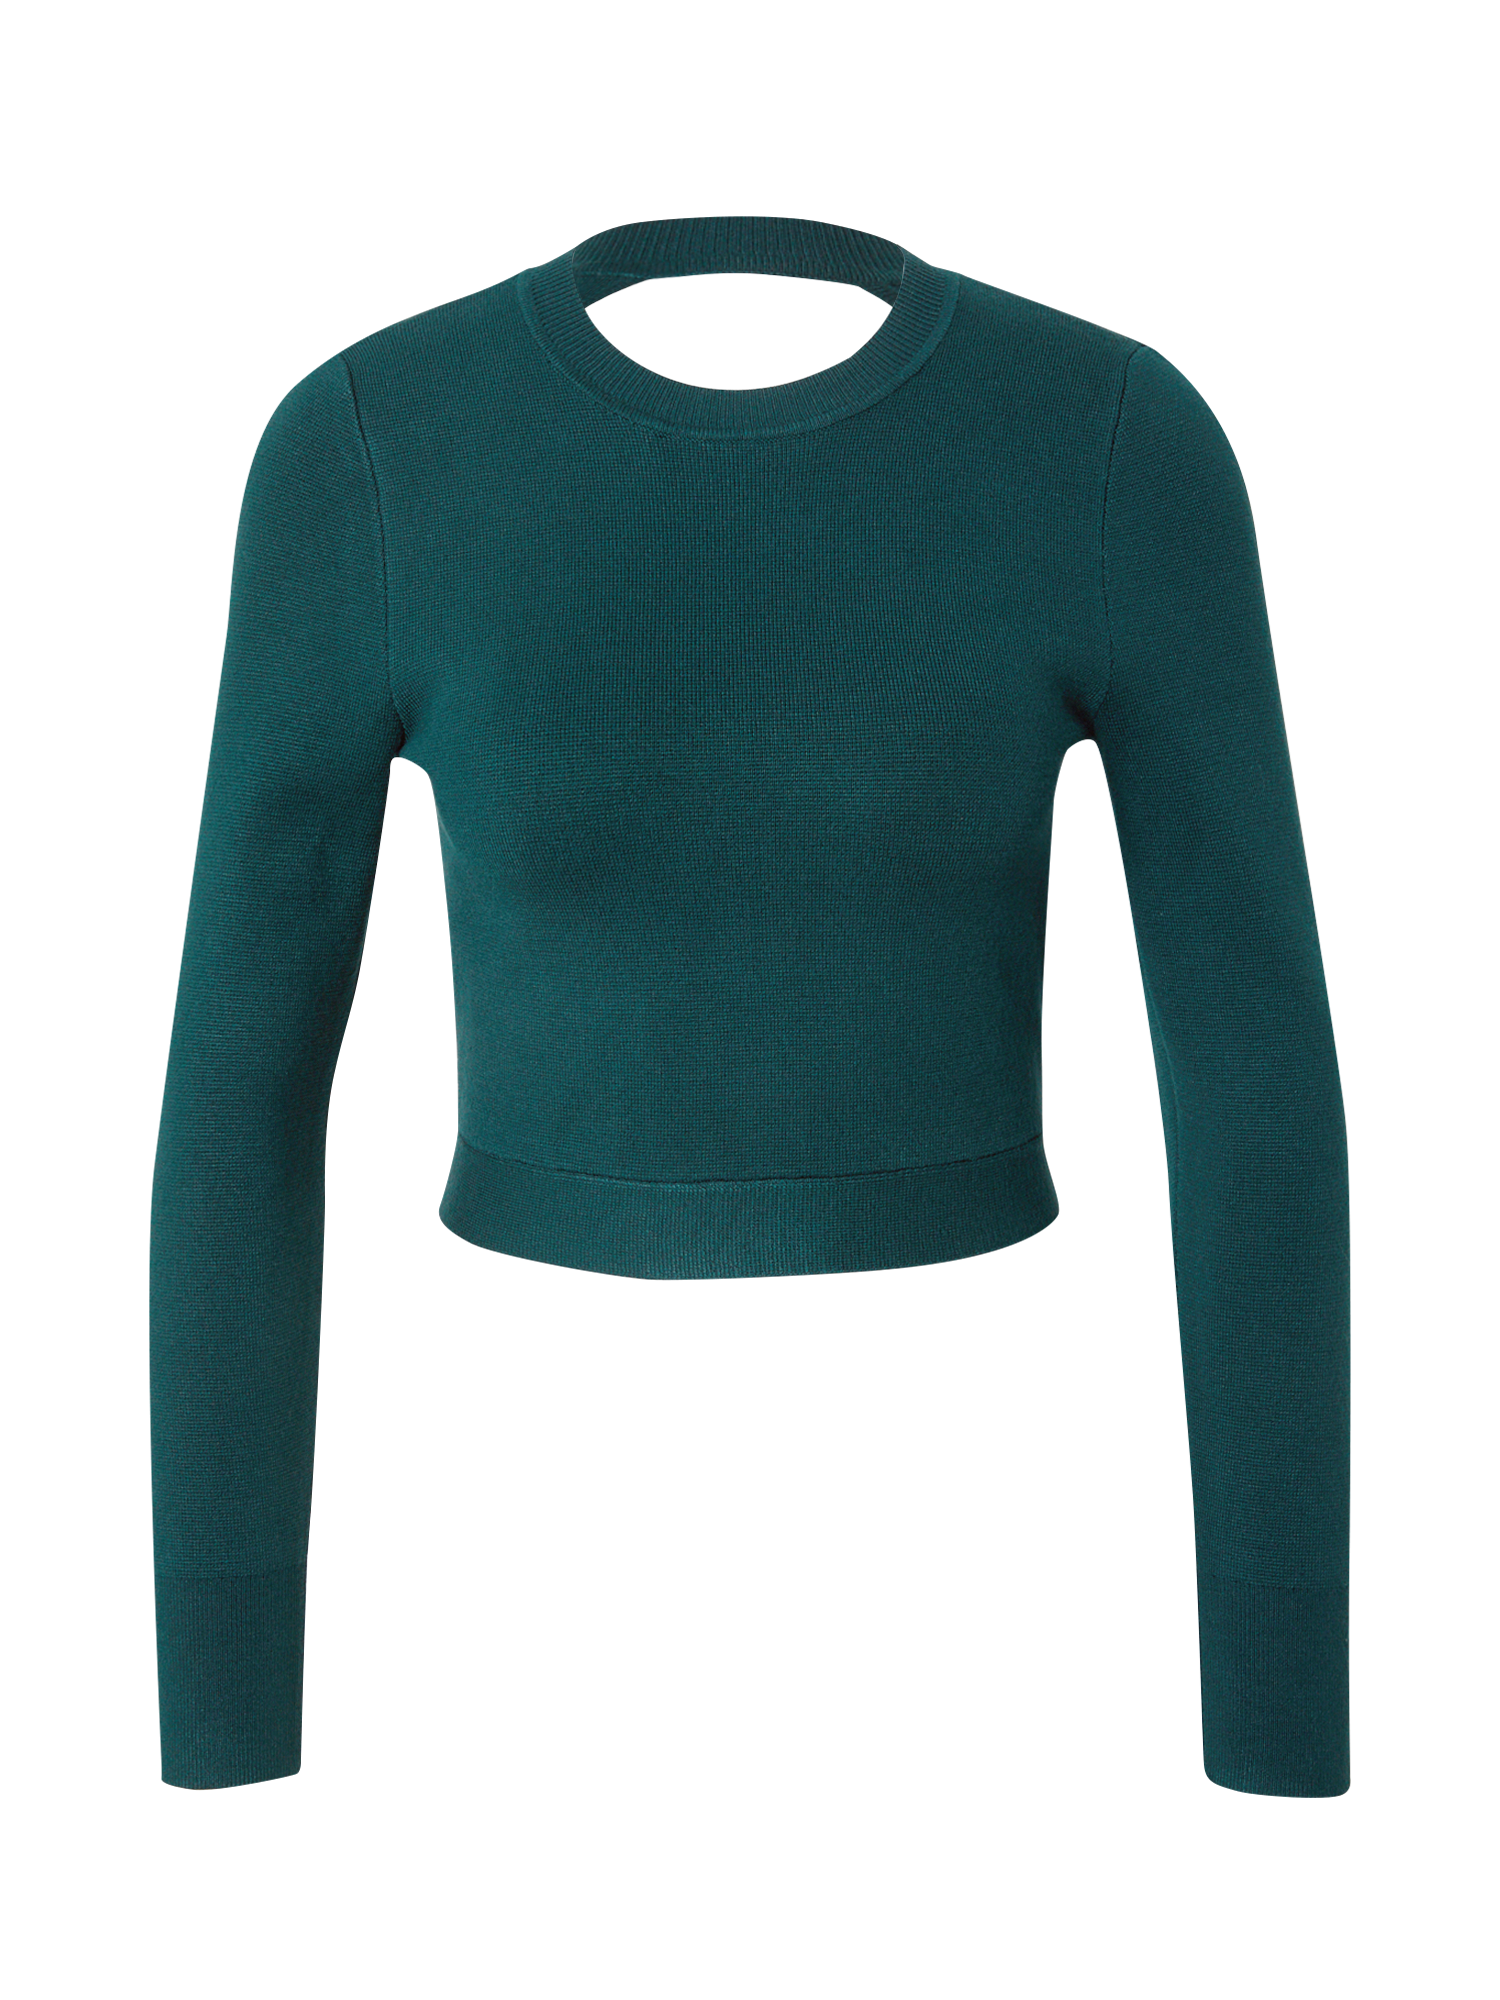 atGD0 Kobiety Abercrombie & Fitch Sweter w kolorze Ciemnozielonym 